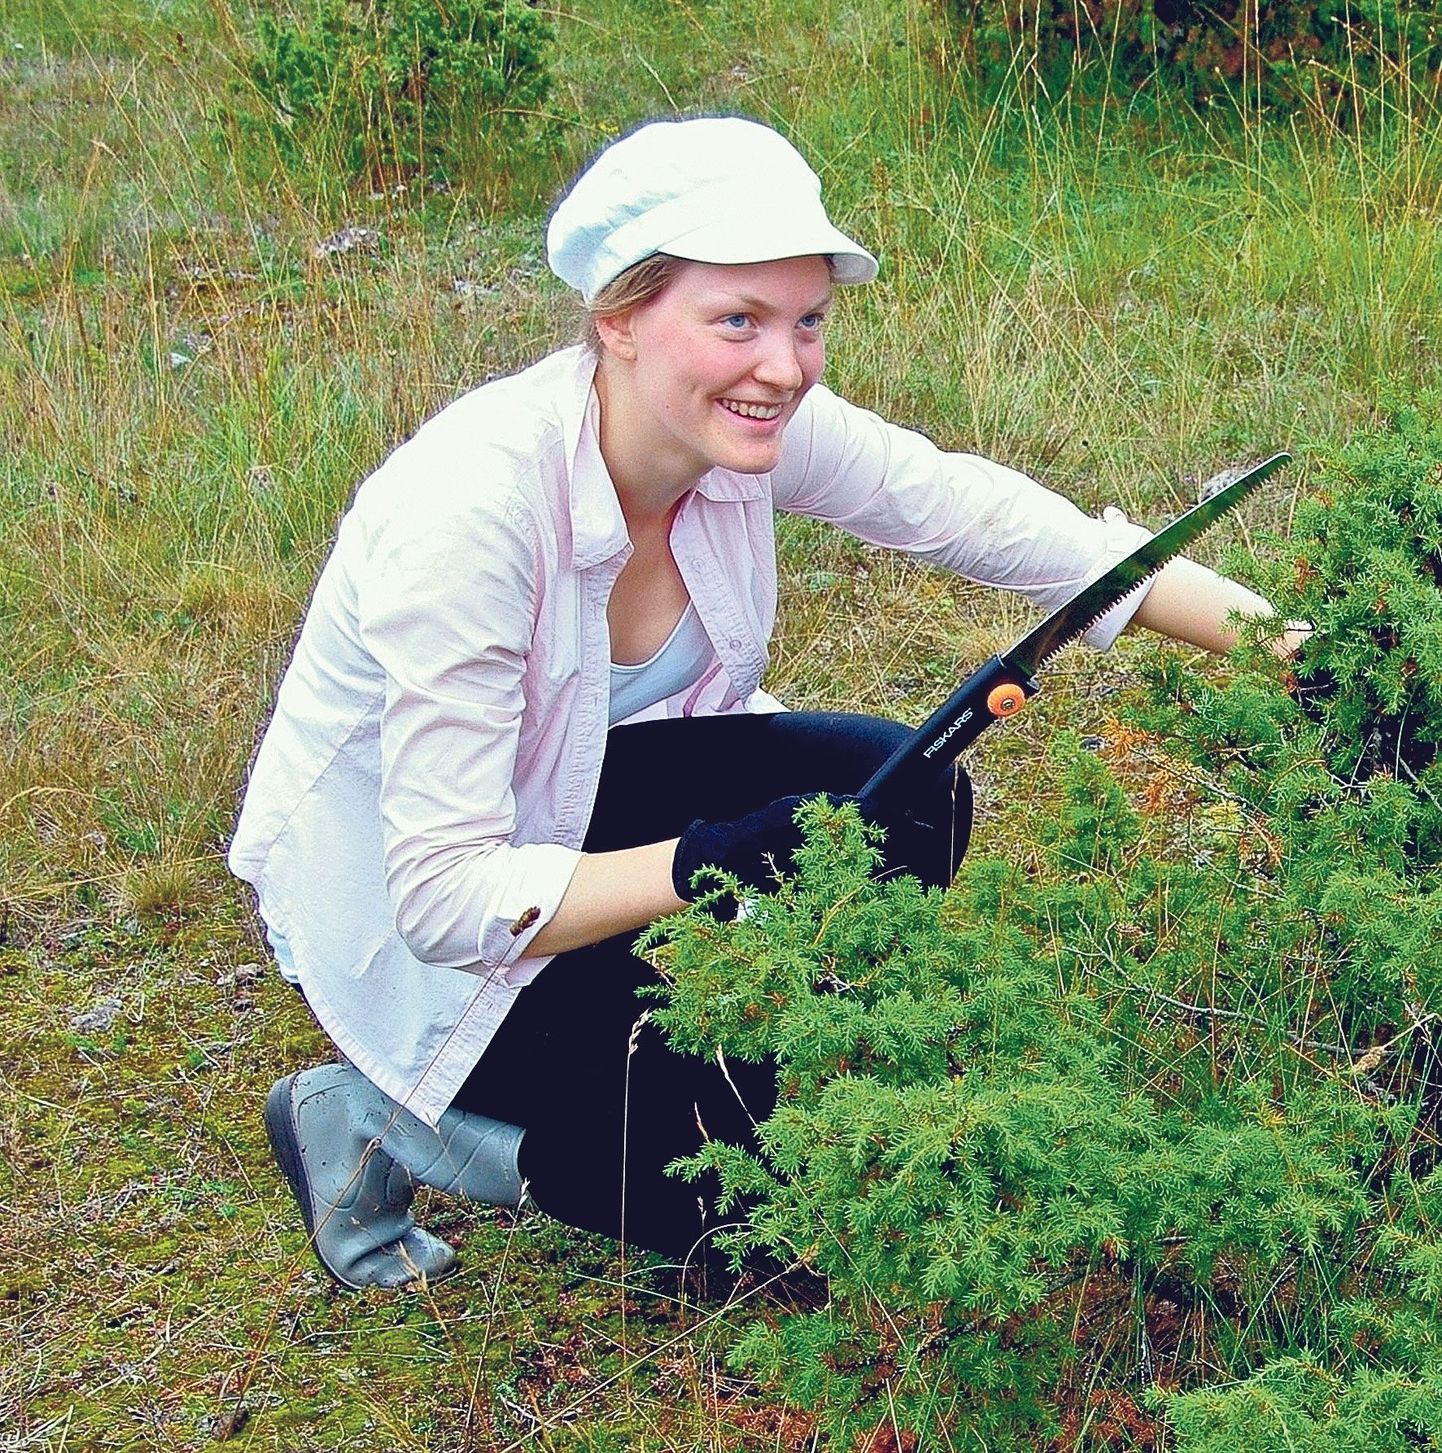 Liis Kasari on Tartu Ülikooli ökoloogia ja maateaduse instituudi doktorant. Tema uuringud aitavad teada saada, millised taimed on võitjad, millised kaotajad. Taimed, mida ta uurib, kasvavad loopealsetel, mis on kadakate ja kõrgemate taimedega kinni kasvamas.